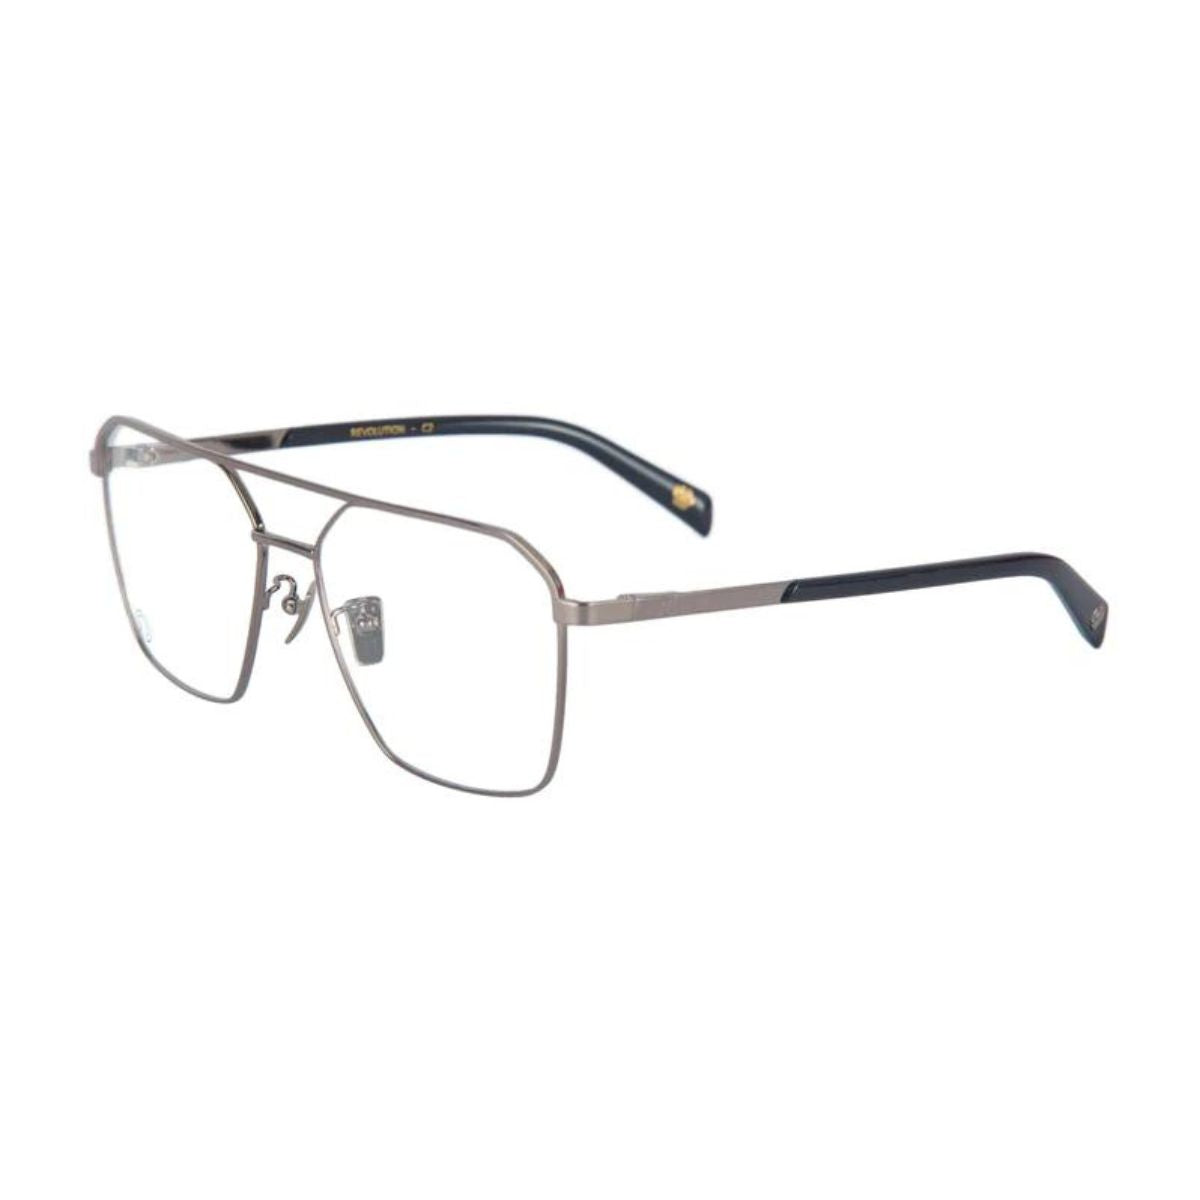 "The Monk Revolution C4 eyesight glasses frame for men's at optorium"